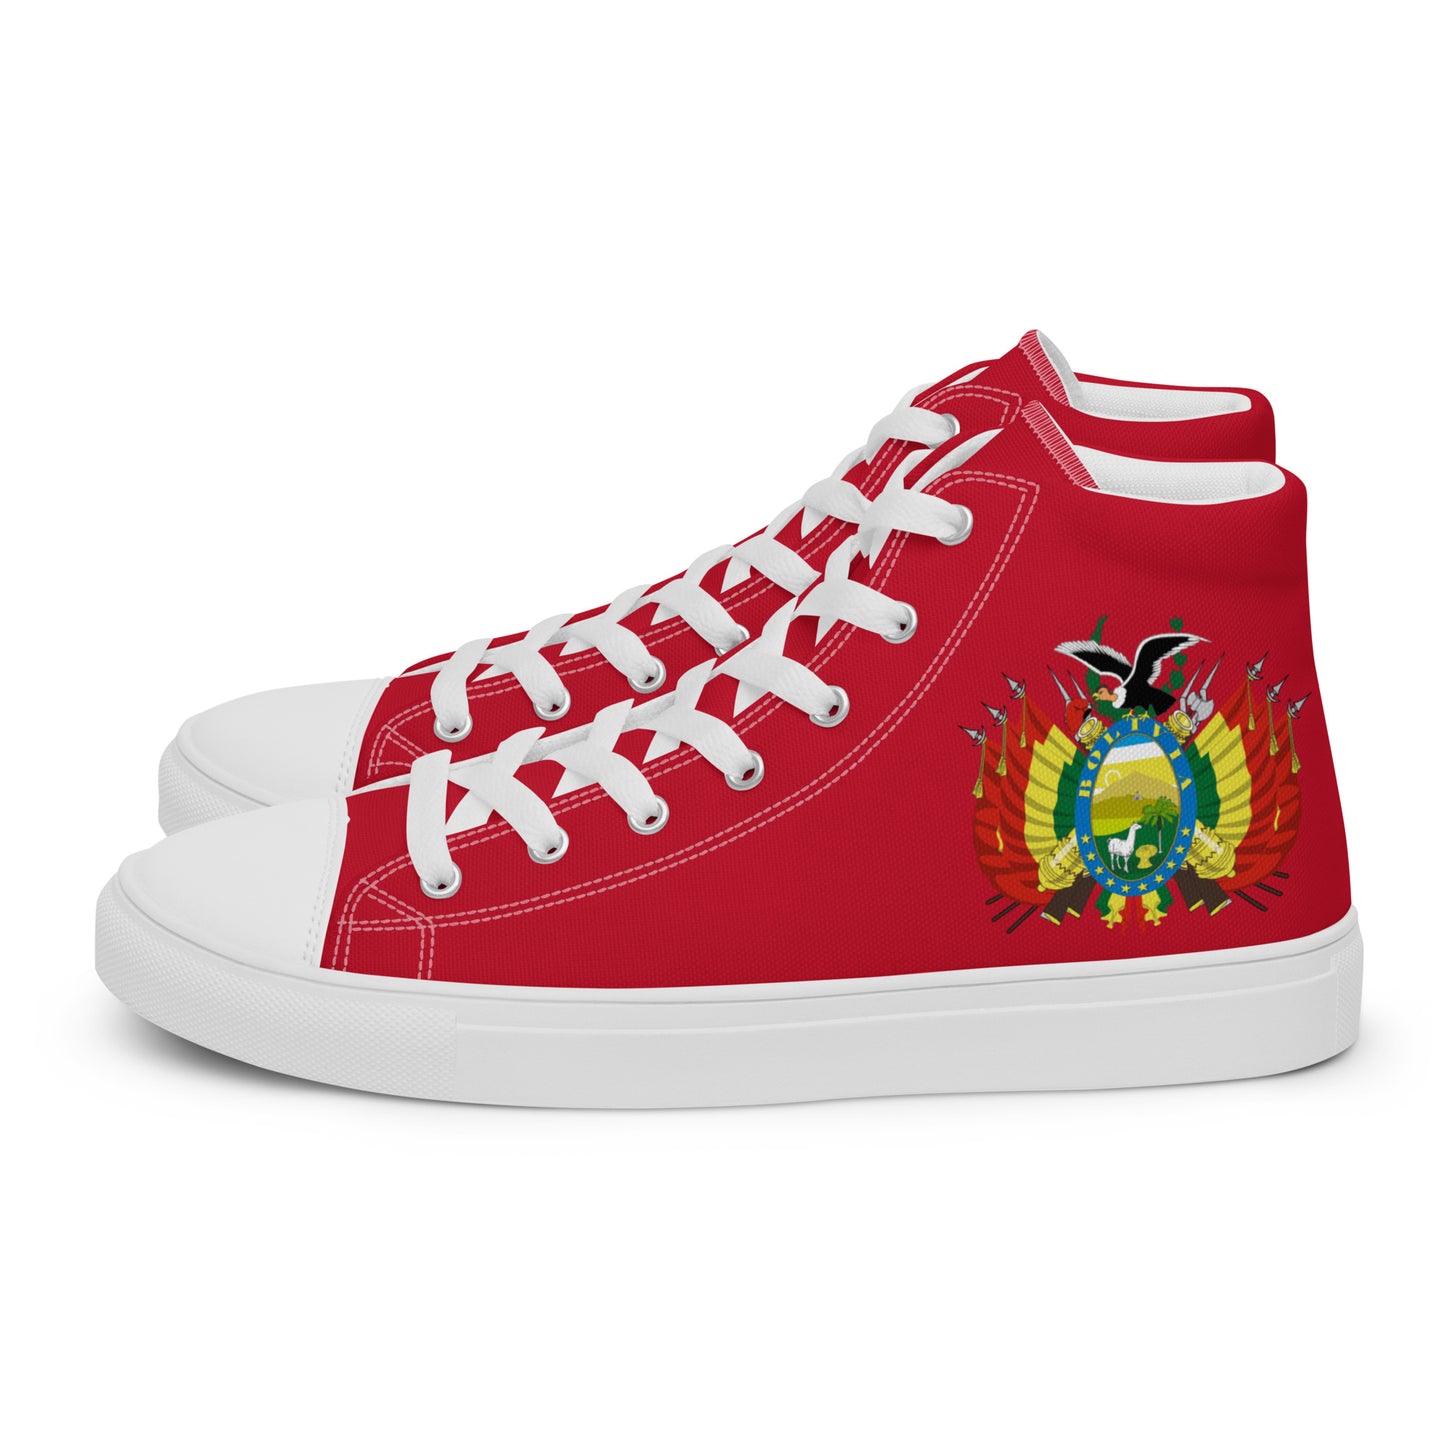 Bolivia - Hombre - Rojo - Zapatos High top